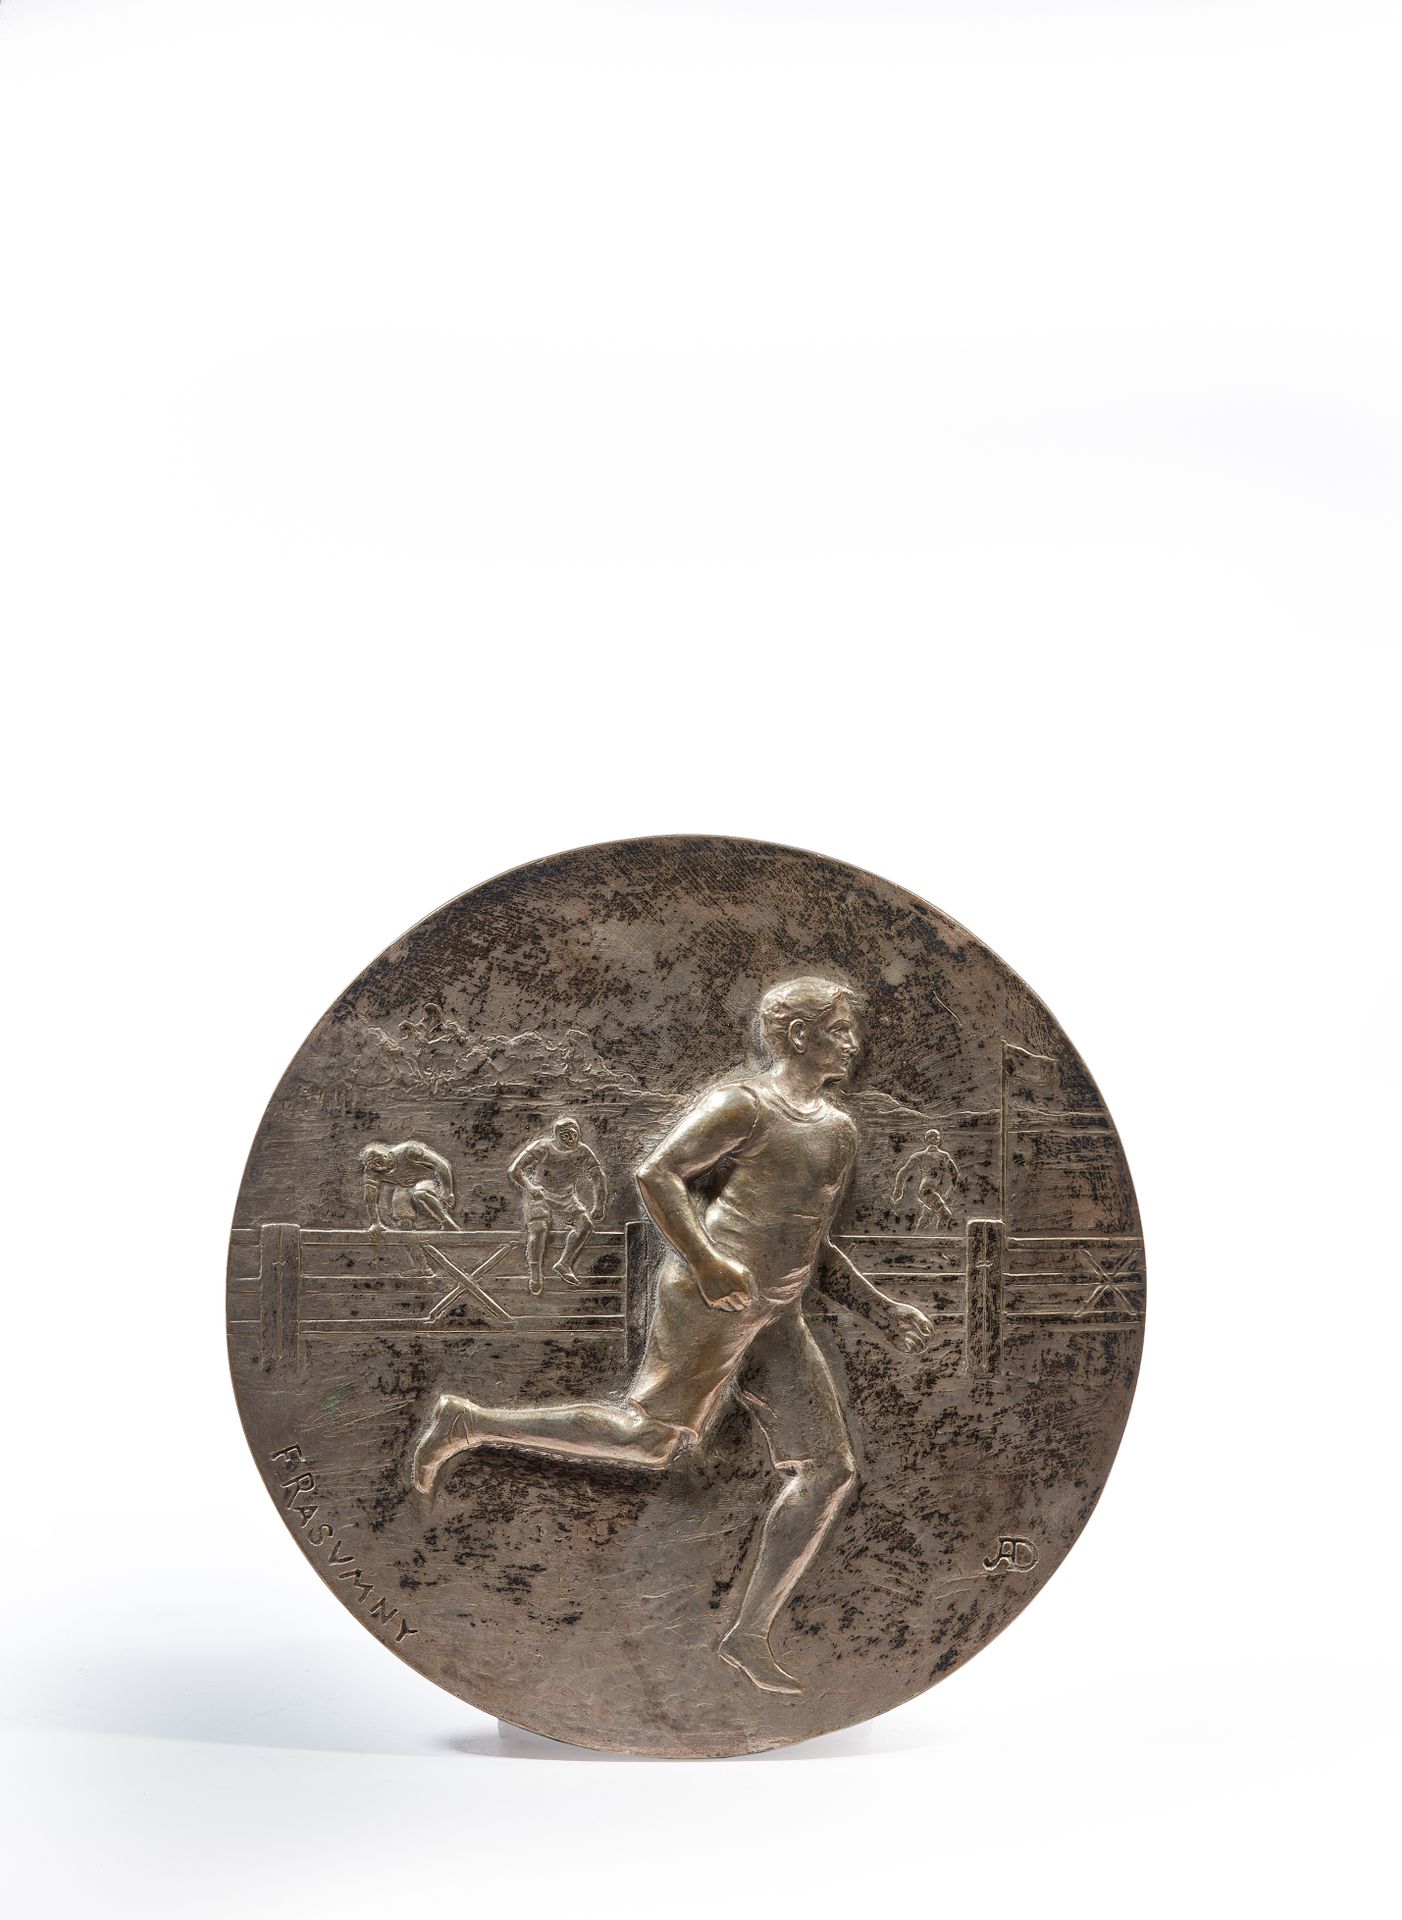 Null Félix RASUMNY (1869-1940)

La corsa a piedi

Medaglione in bronzo argentato&hellip;